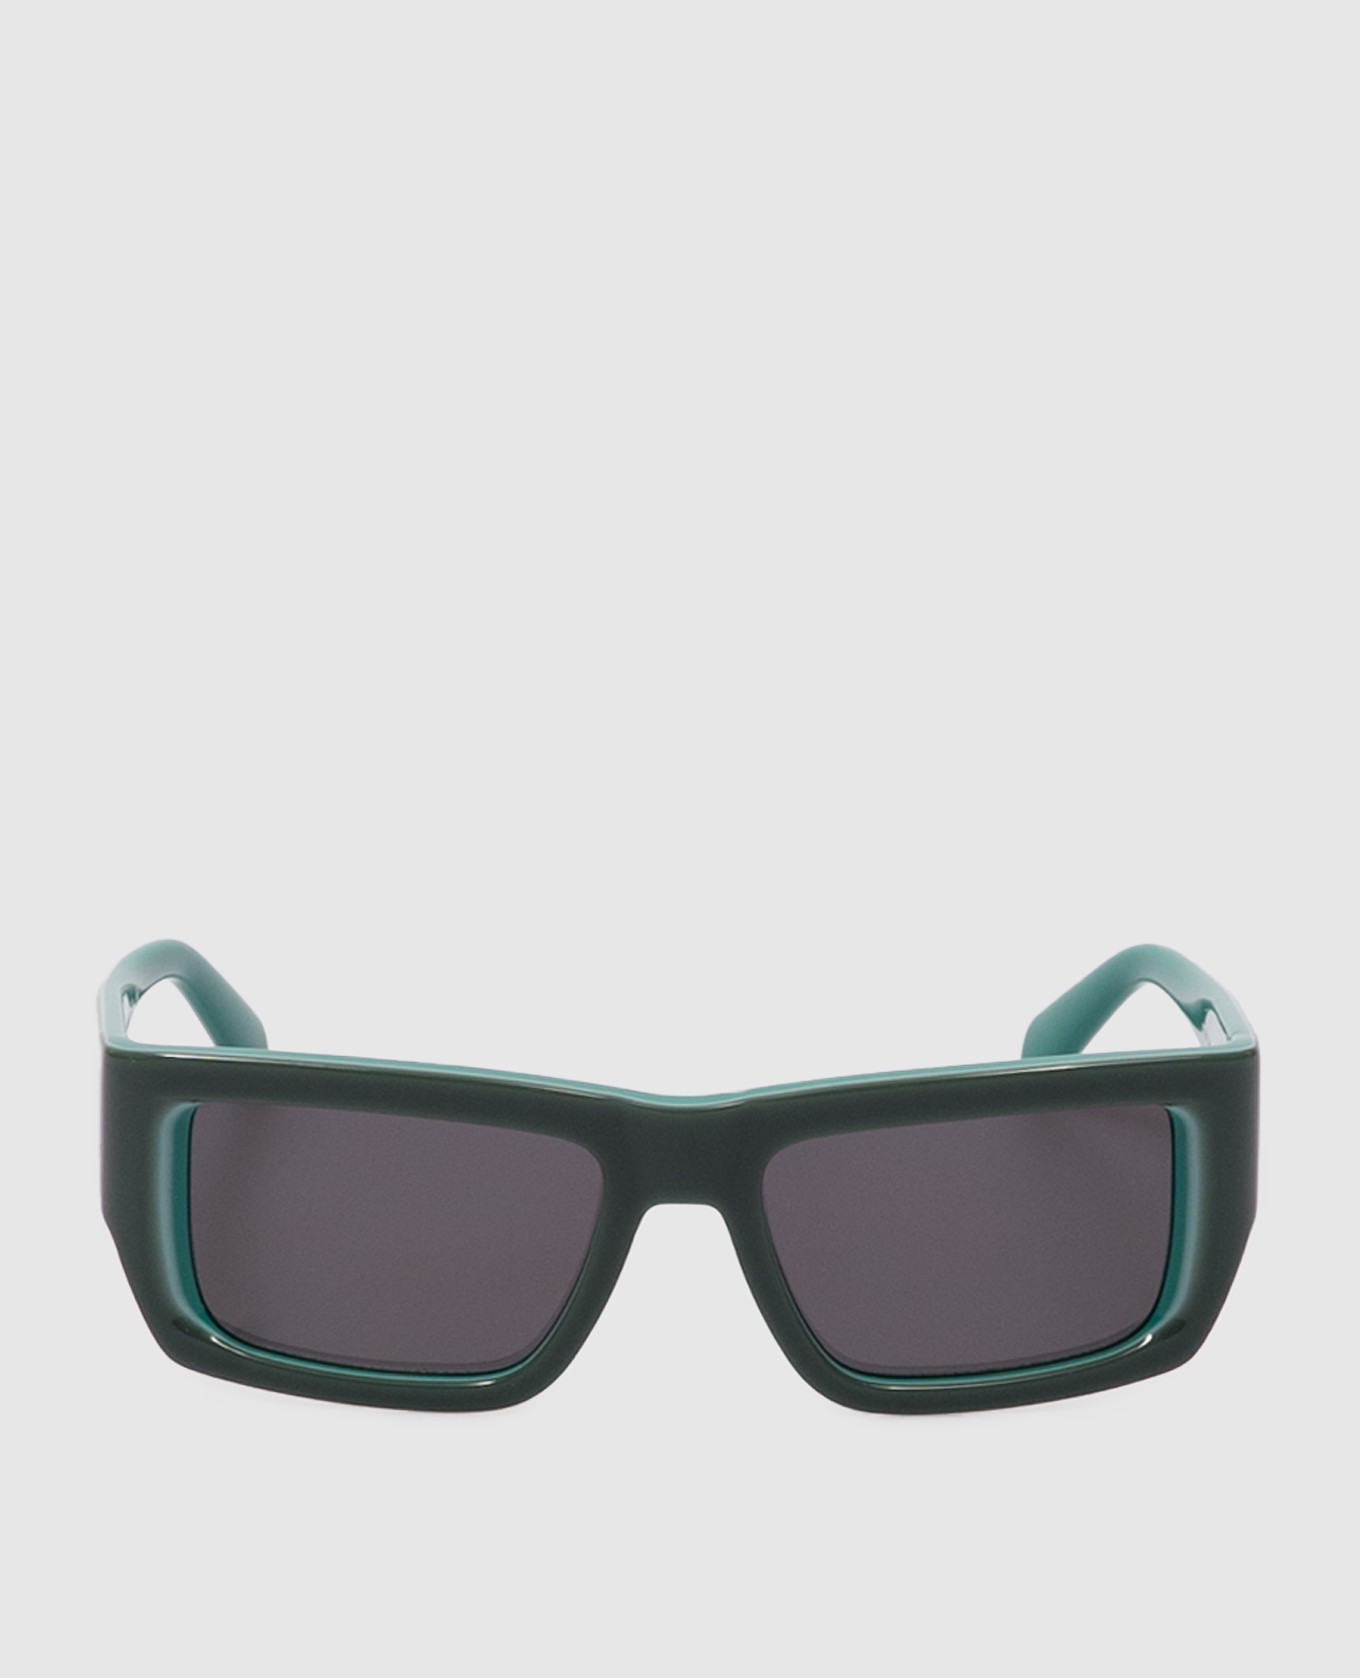 

Зеленые очки PRESCOTT, Зеленый, Солнцезащитные очки